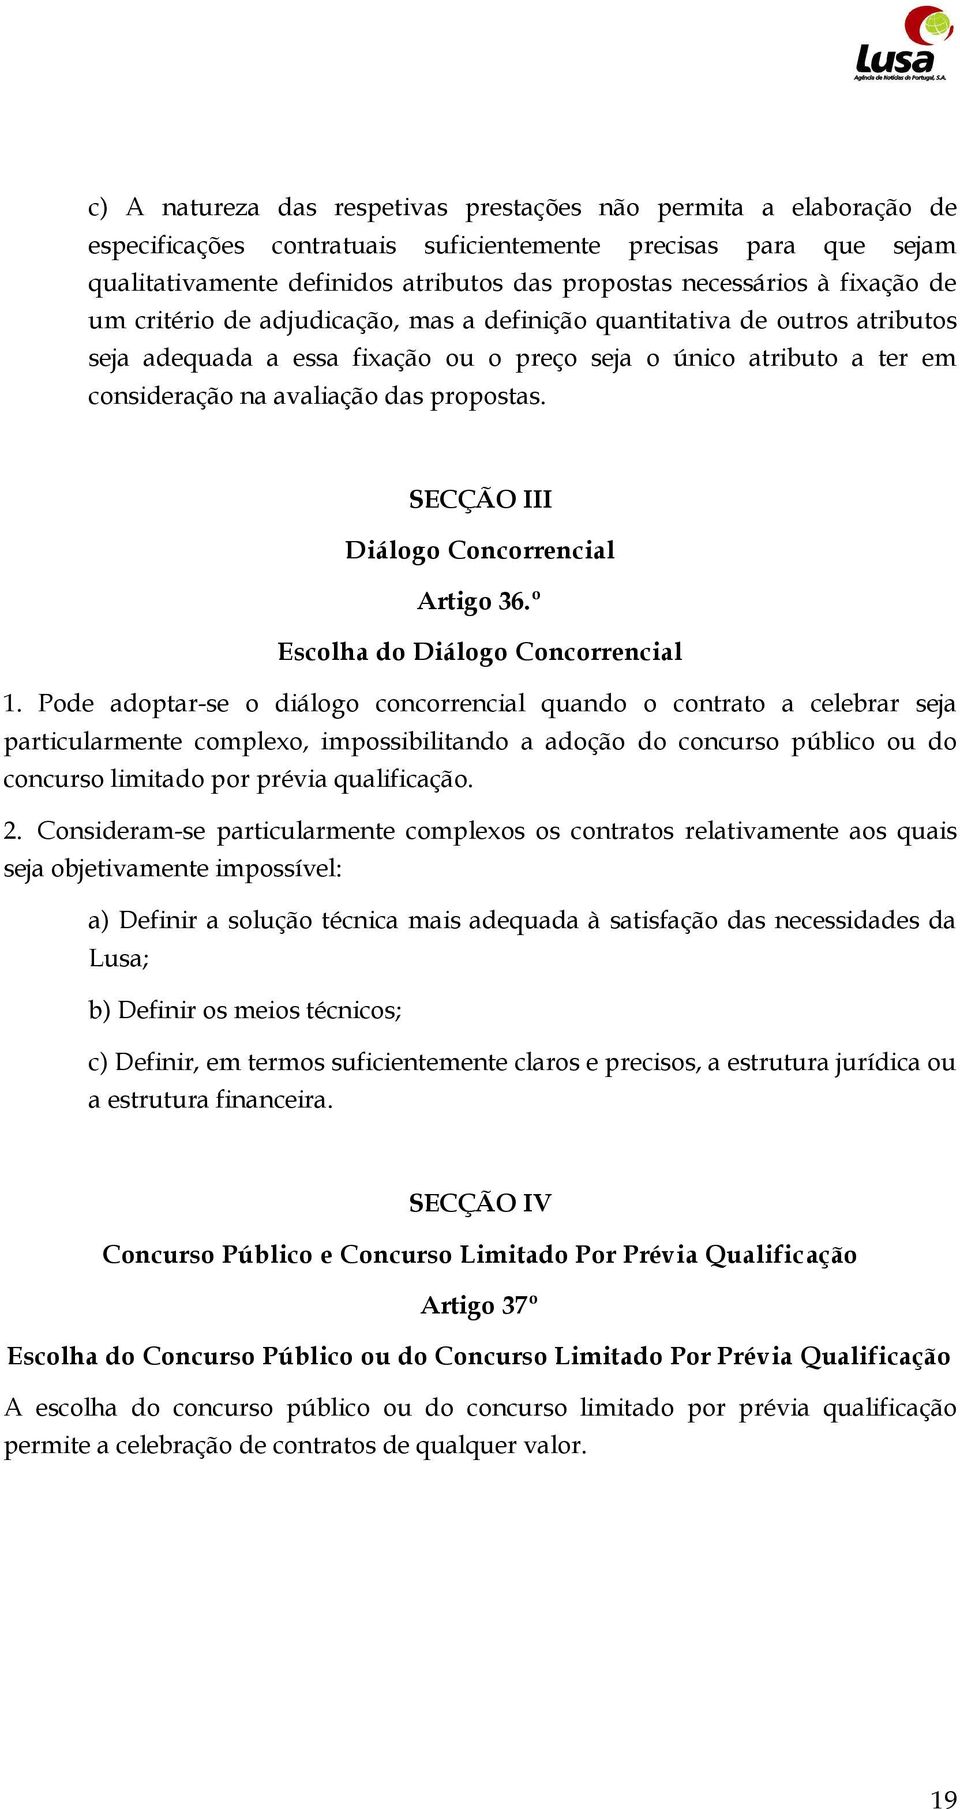 SECÇÃO III Diálogo Concorrencial Artigo 36.º Escolha do Diálogo Concorrencial 1.